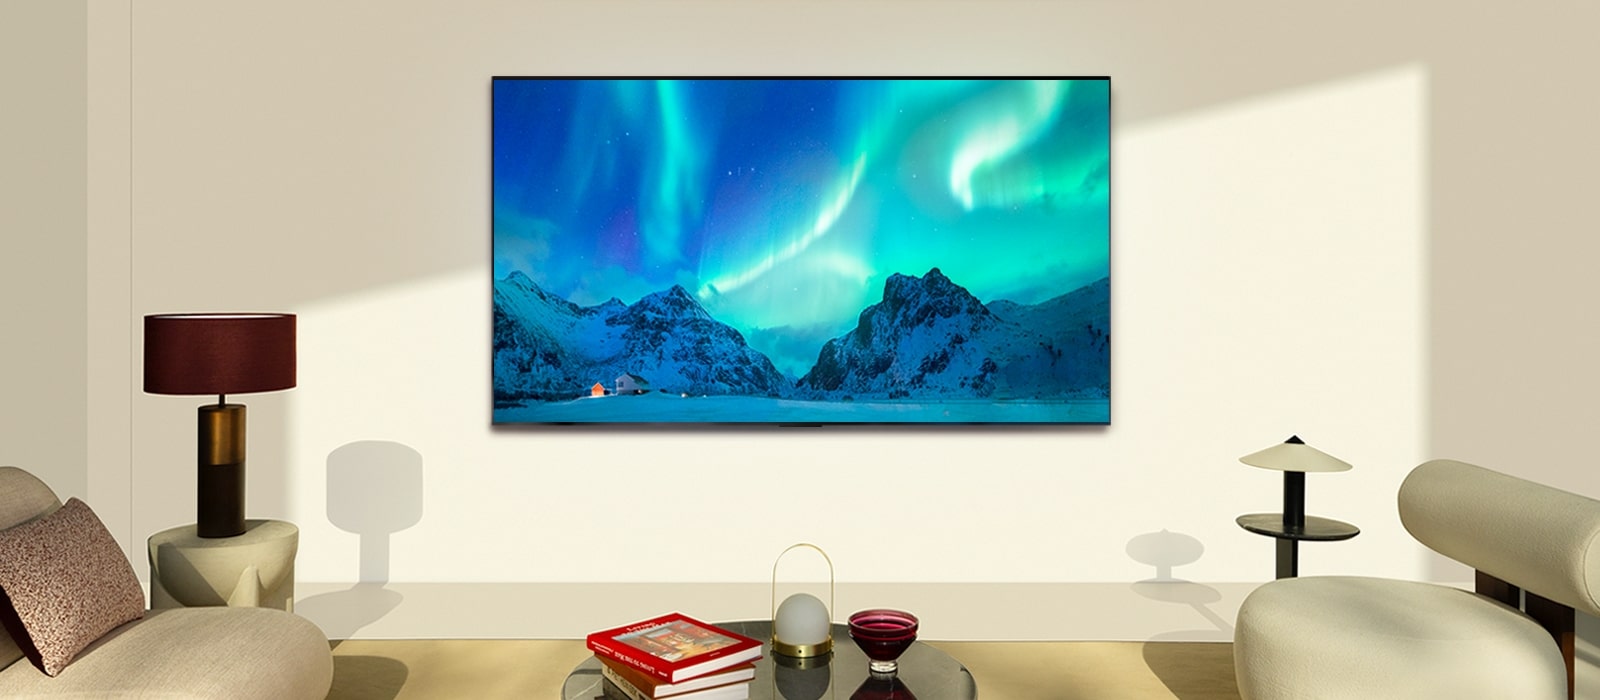 LG OLED TV v modernom obytnom priestore počas dňa.Na obrazovke sa zobrazuje polárna žiara s ideálnou úrovňou jasu.